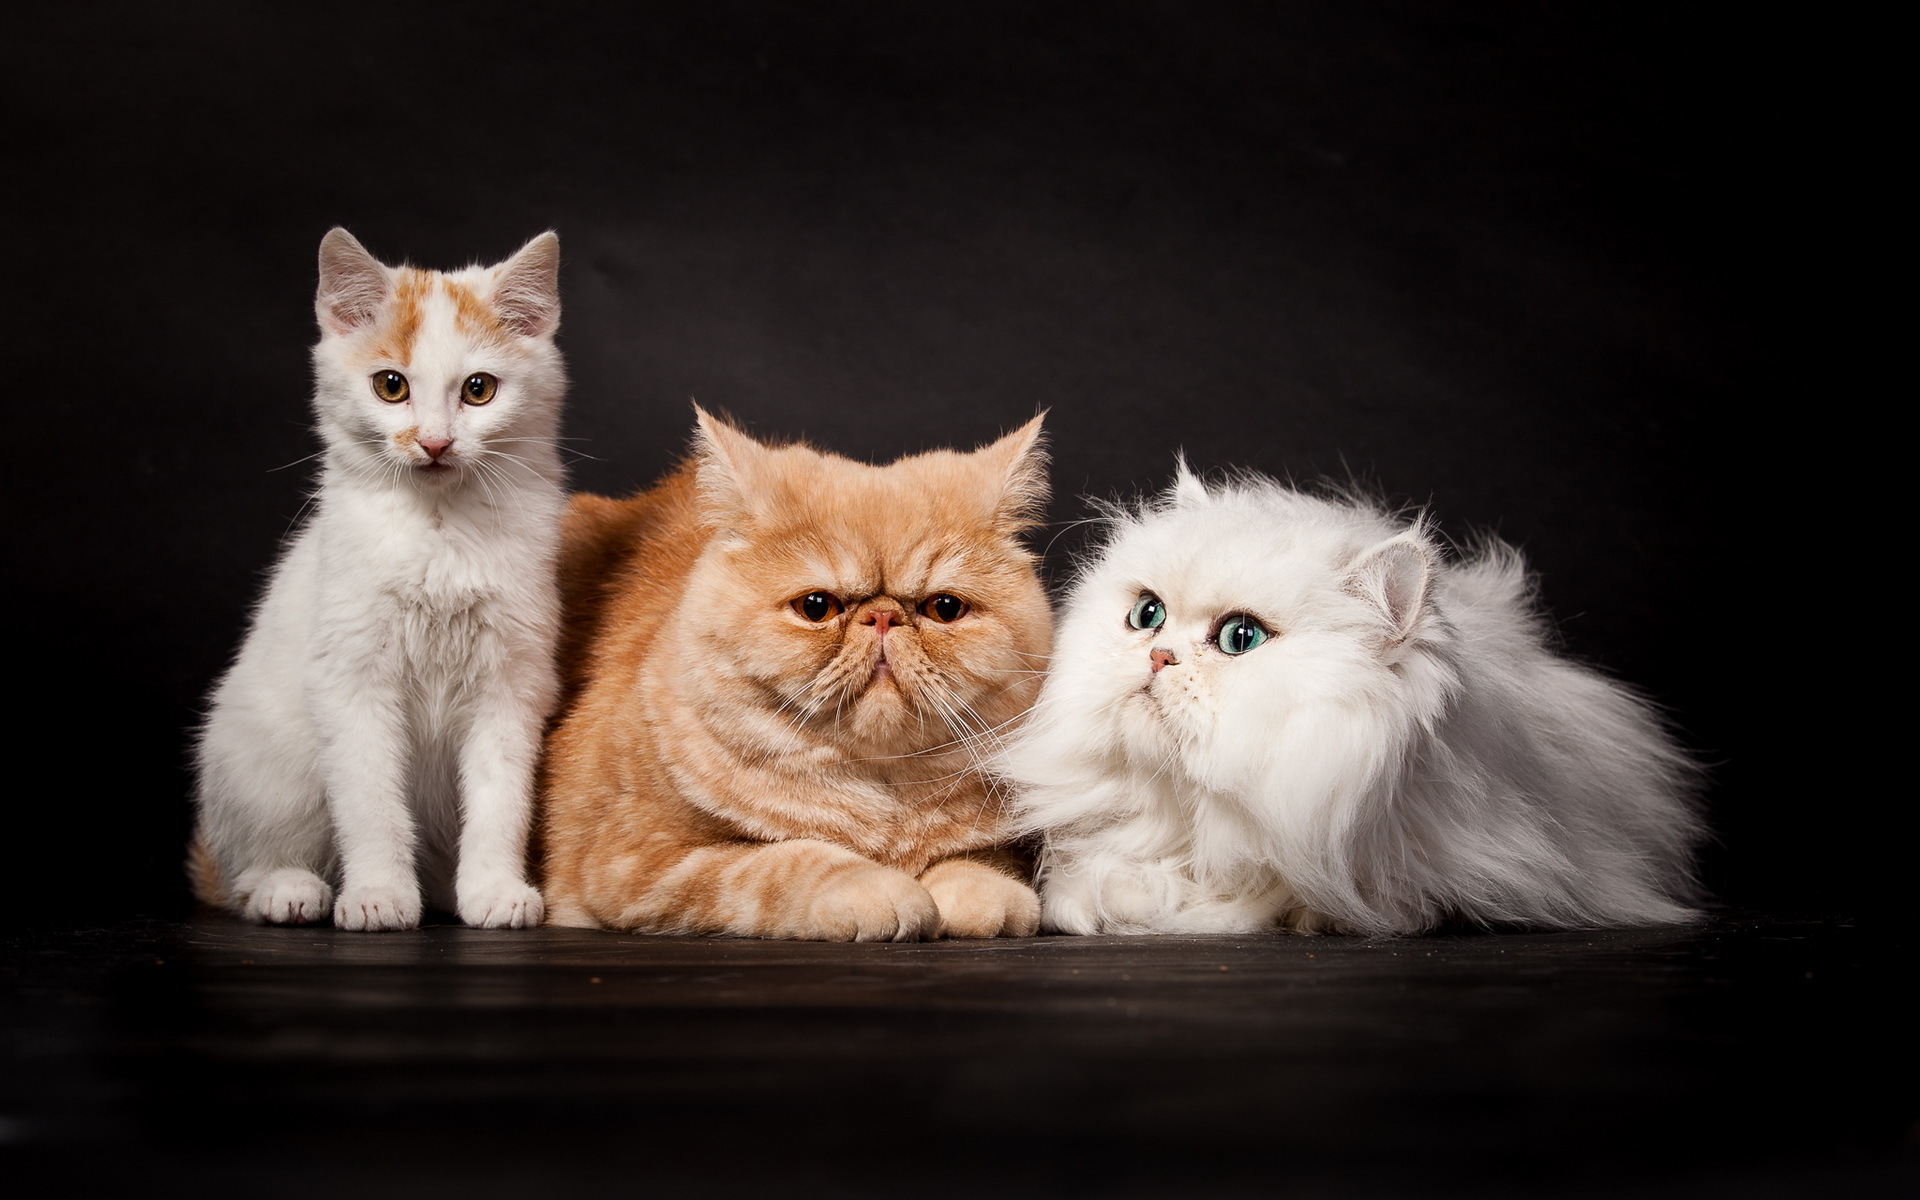 Картинка котят Кошки втроем Животные 1920x1200 Котята котенок котенка кот коты кошка три Трое 3 животное